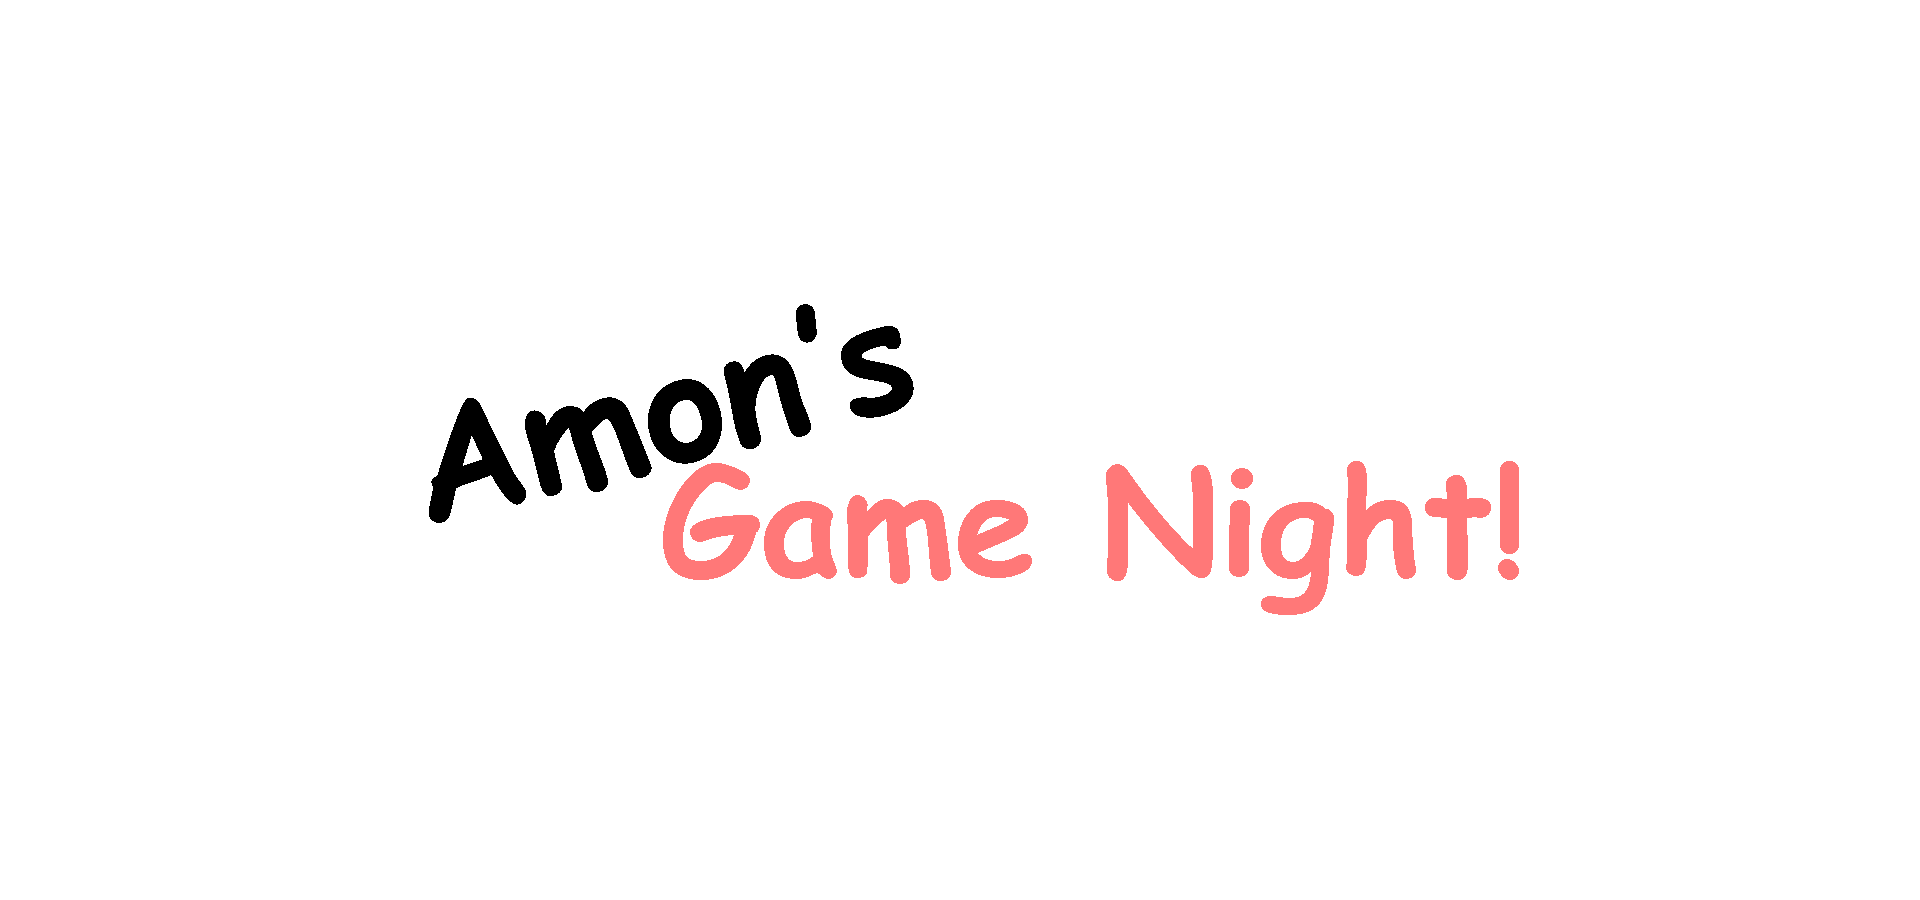 Amon's Game Night!